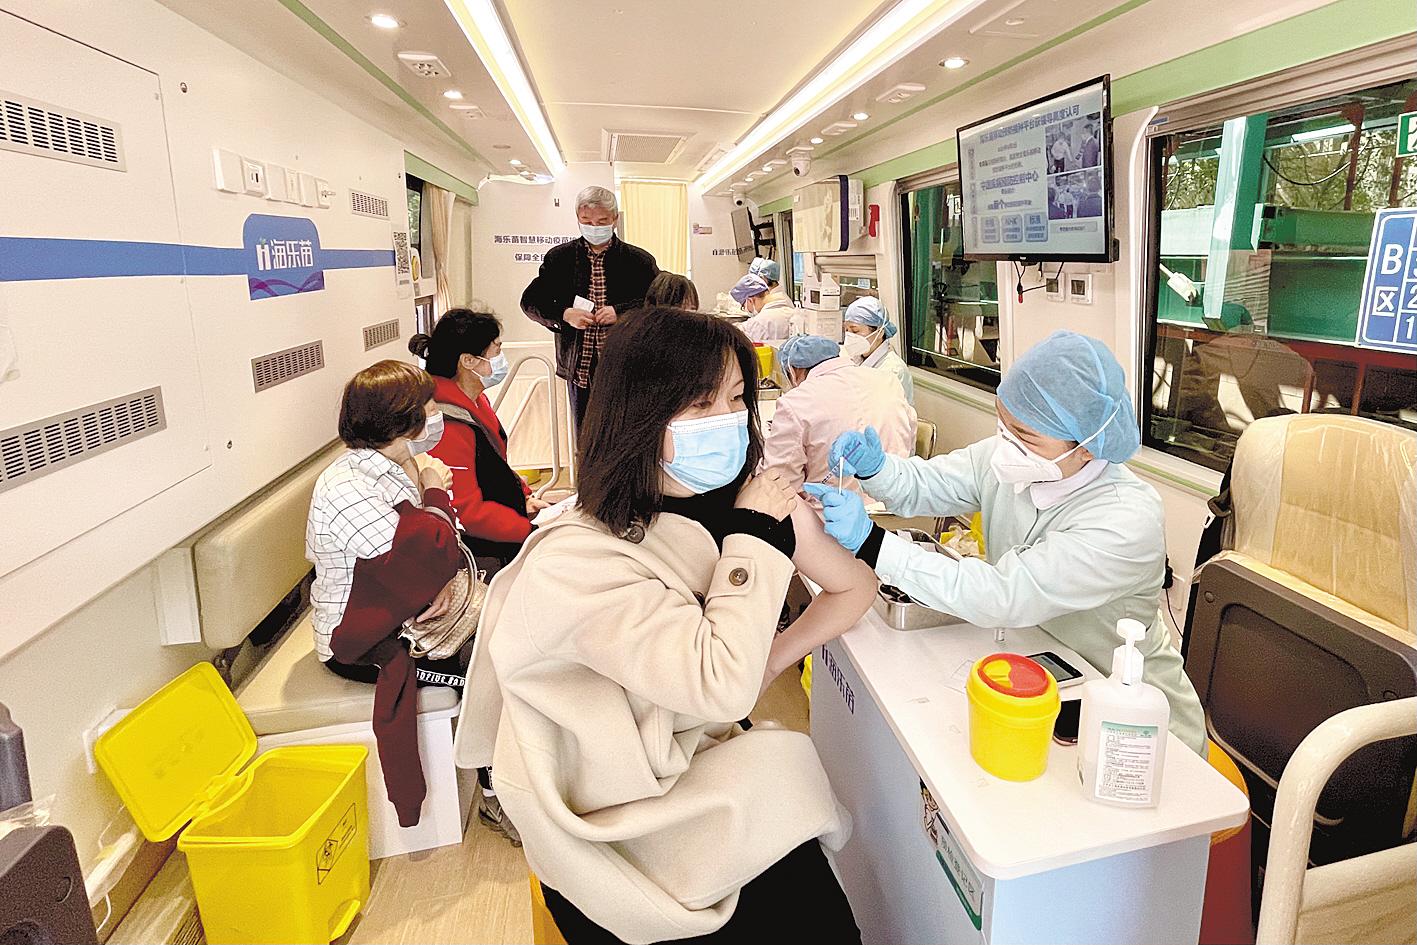 北京大学第一医院有序开展新冠肺炎病毒疫苗接种工作_北医新闻网